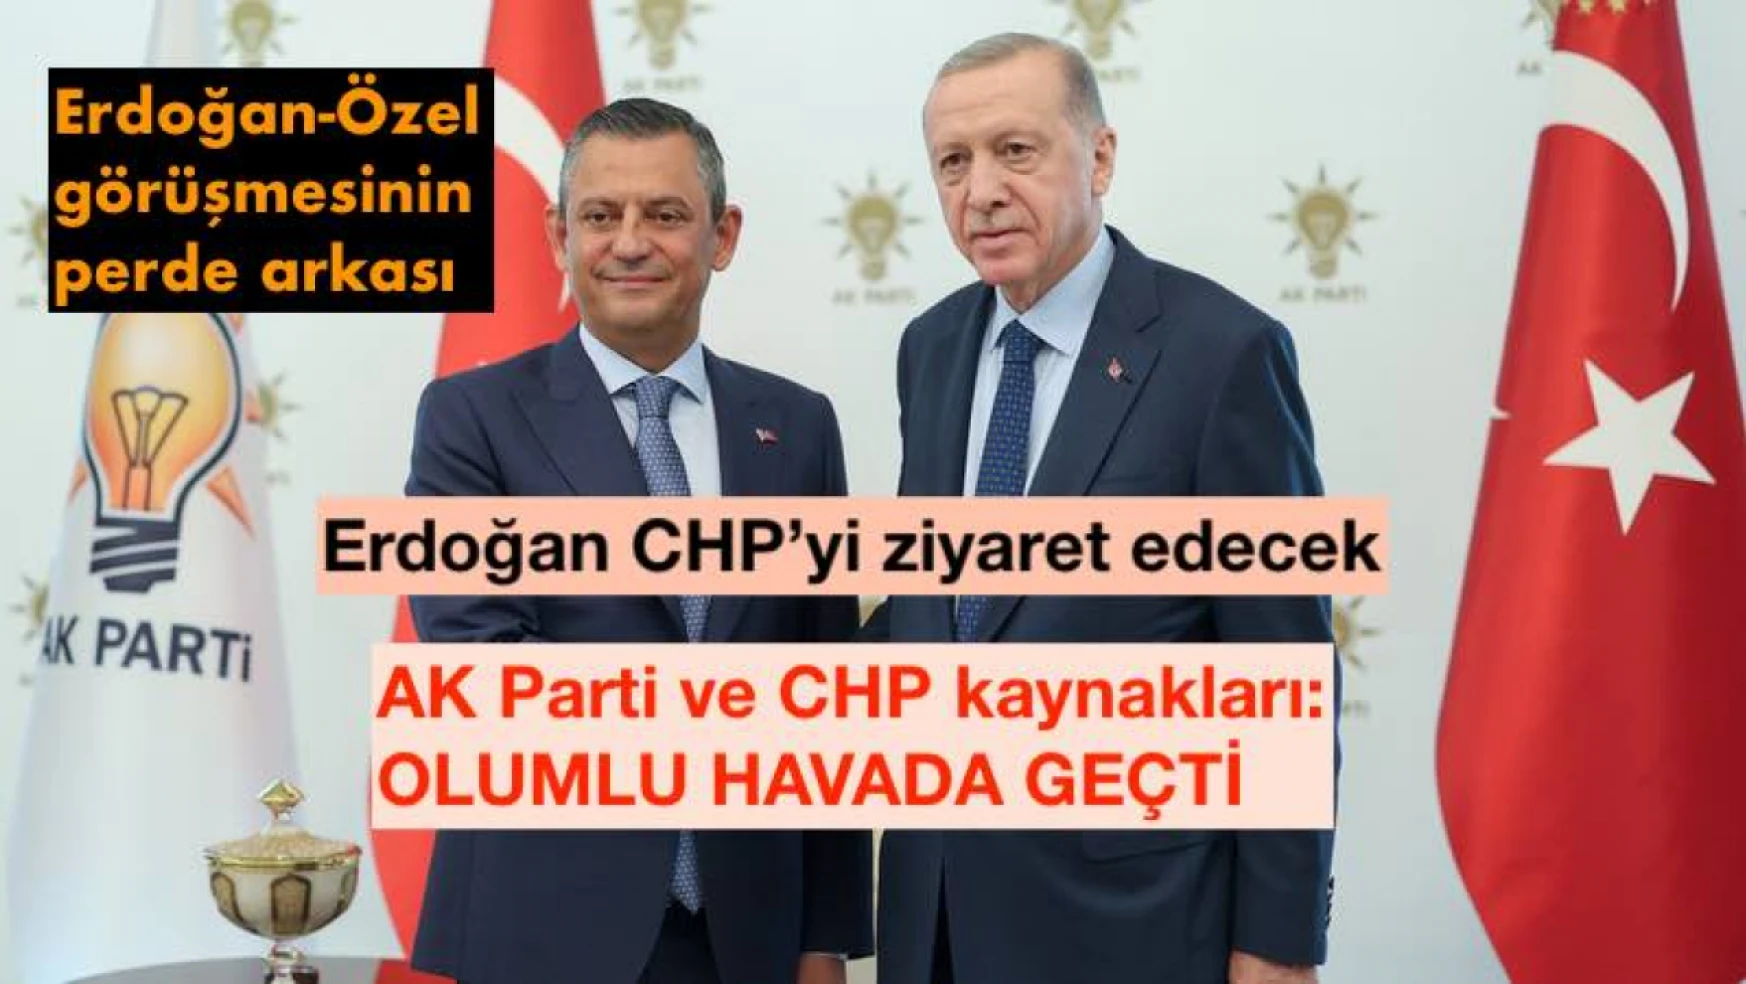 Özel-Erdoğan AK Parti'de bir araya geldi: Görüşmeden kulis bilgiler